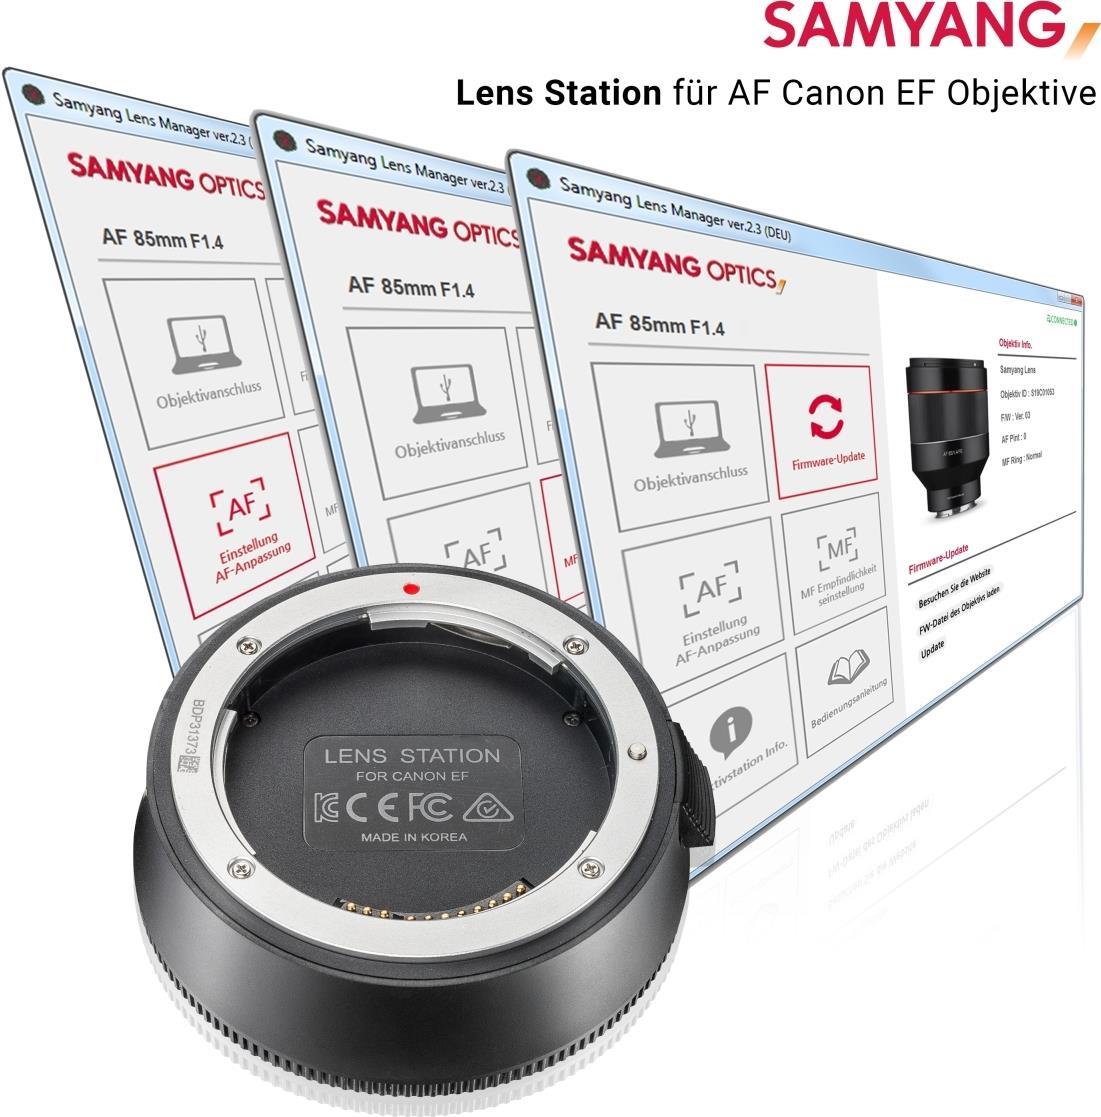 Samyang Lens Station für AF Canon EF Objektive (22563)